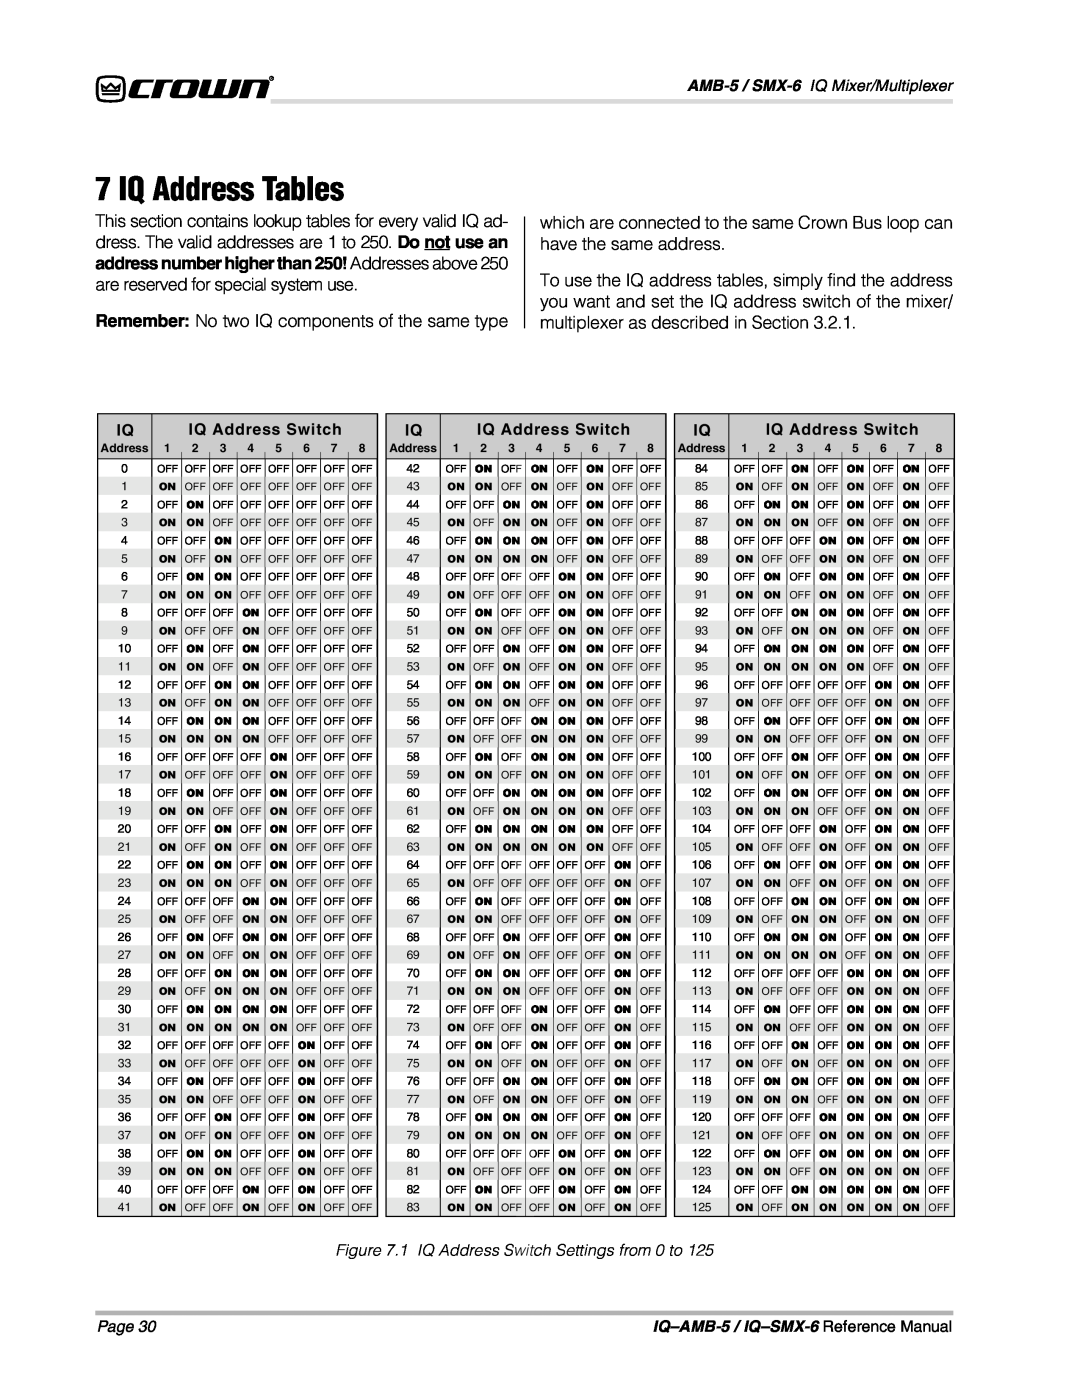 Crown IQSMX-6, IQAMB-5 manual IQ Address Tables 